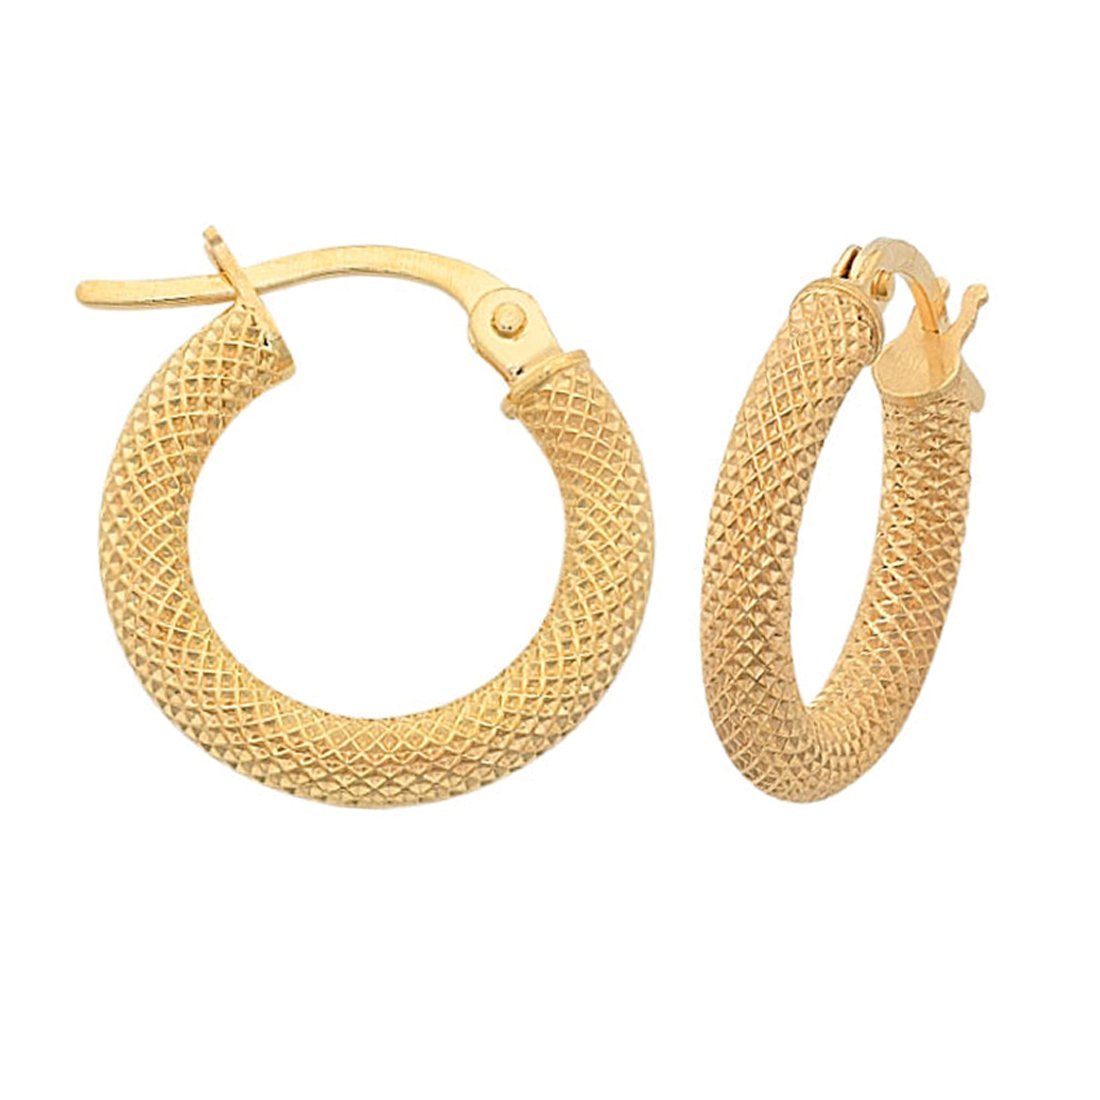 Fancy Mesh Style 20mm Hoop Earrings in 9ct Yellow Gold Earrings Bevilles 